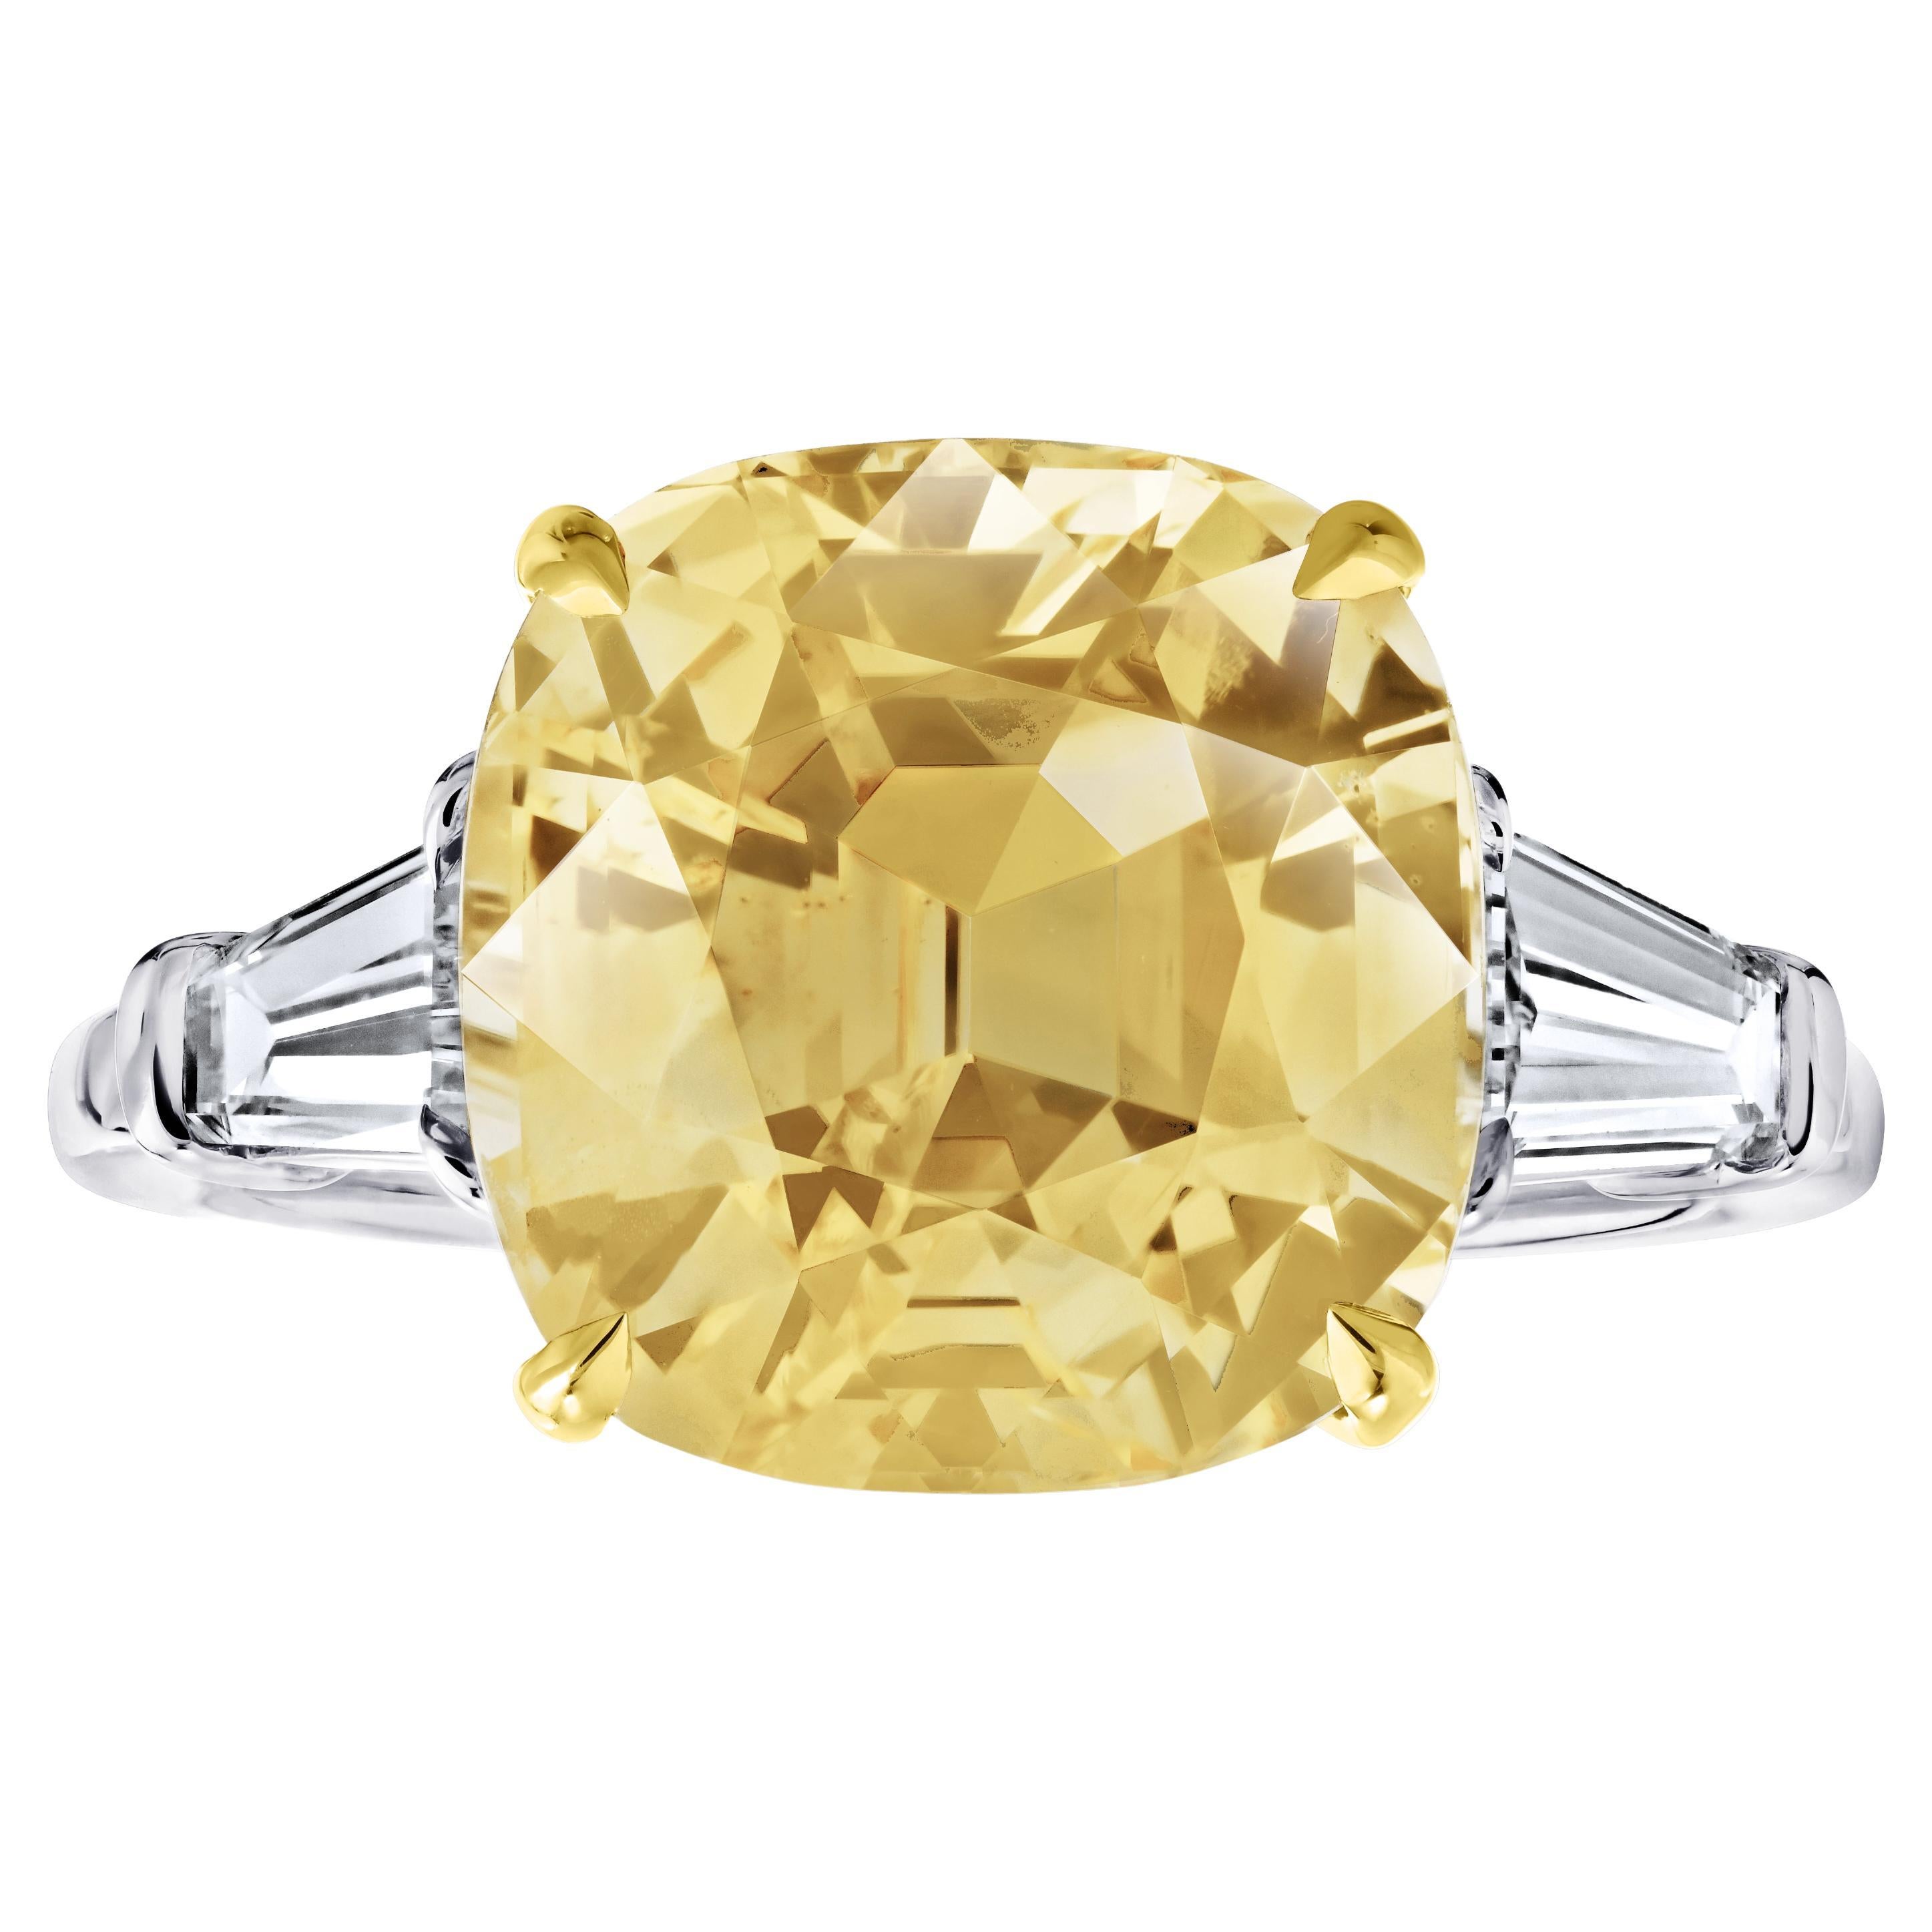 Bague en platine avec saphir jaune taille coussin de 7,54 carats et diamants